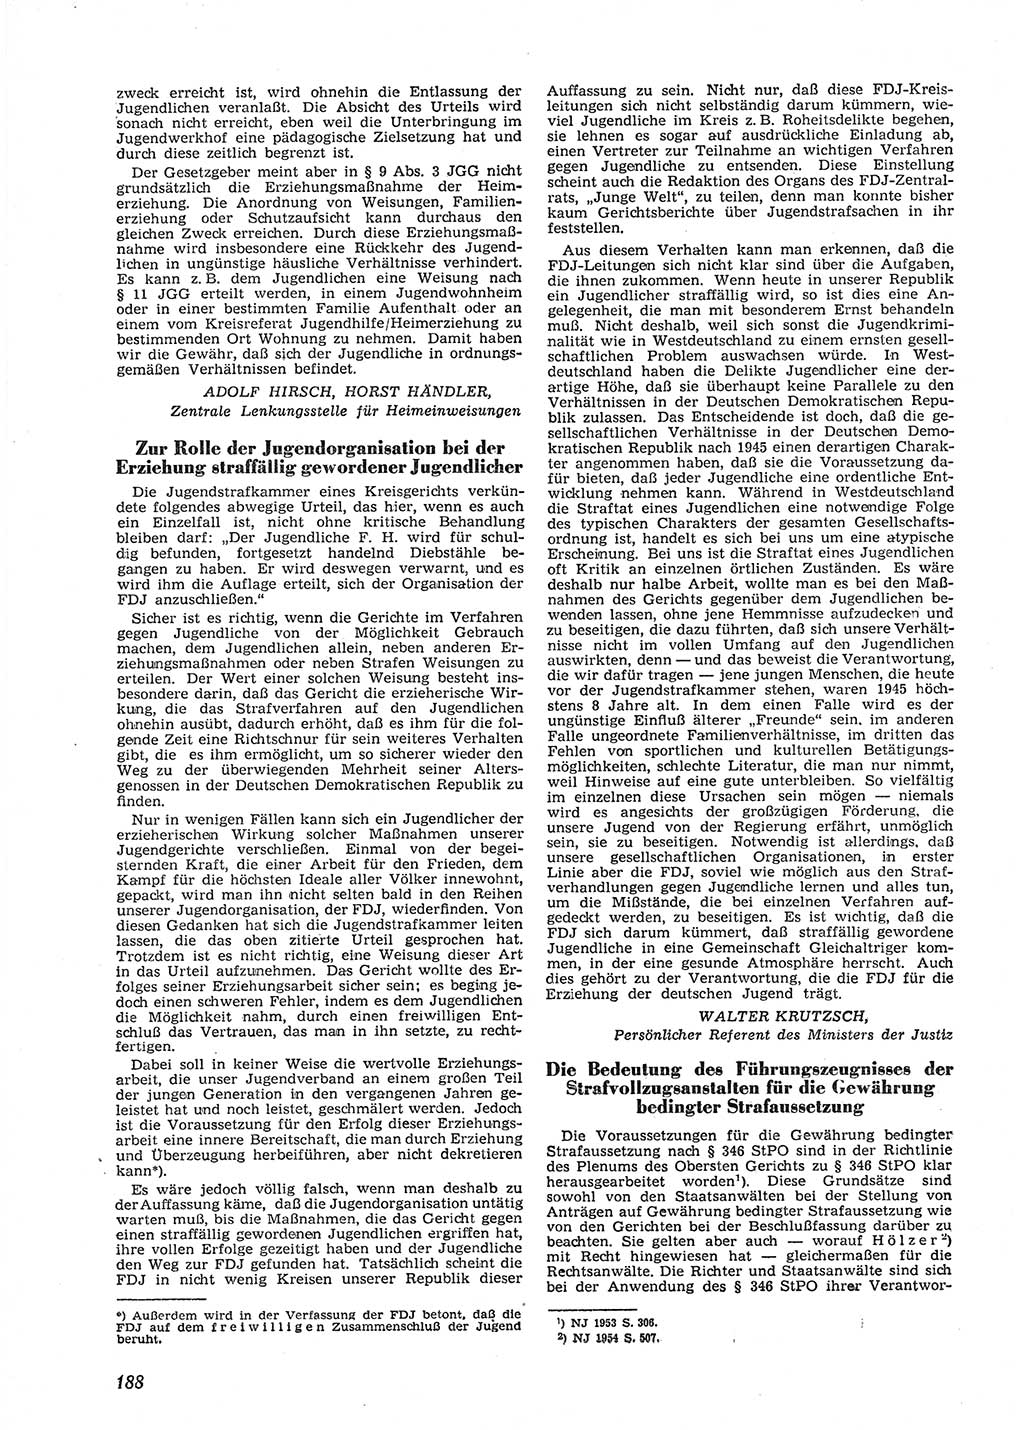 Neue Justiz (NJ), Zeitschrift für Recht und Rechtswissenschaft [Deutsche Demokratische Republik (DDR)], 9. Jahrgang 1955, Seite 188 (NJ DDR 1955, S. 188)